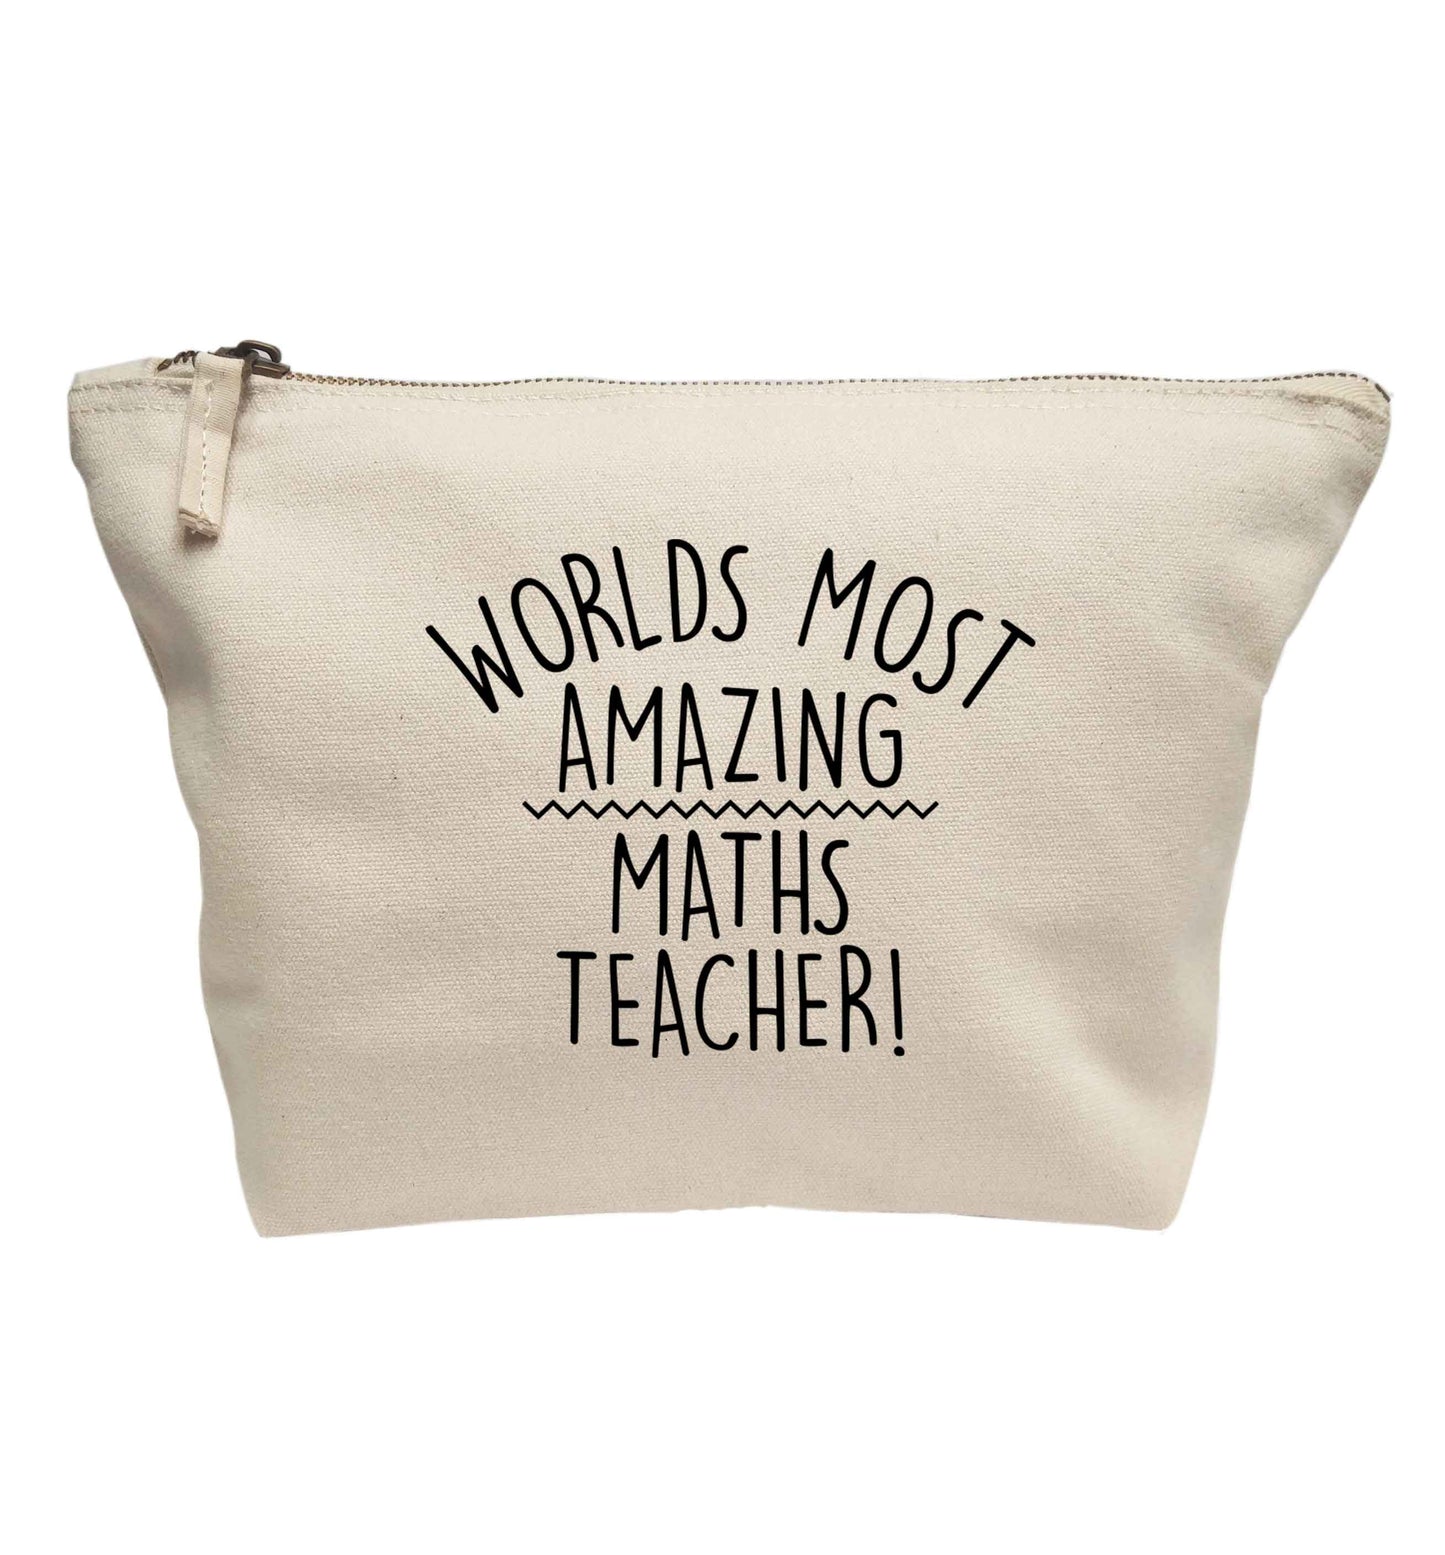 Worlds most amazing maths teacher | Makeup / wash bag